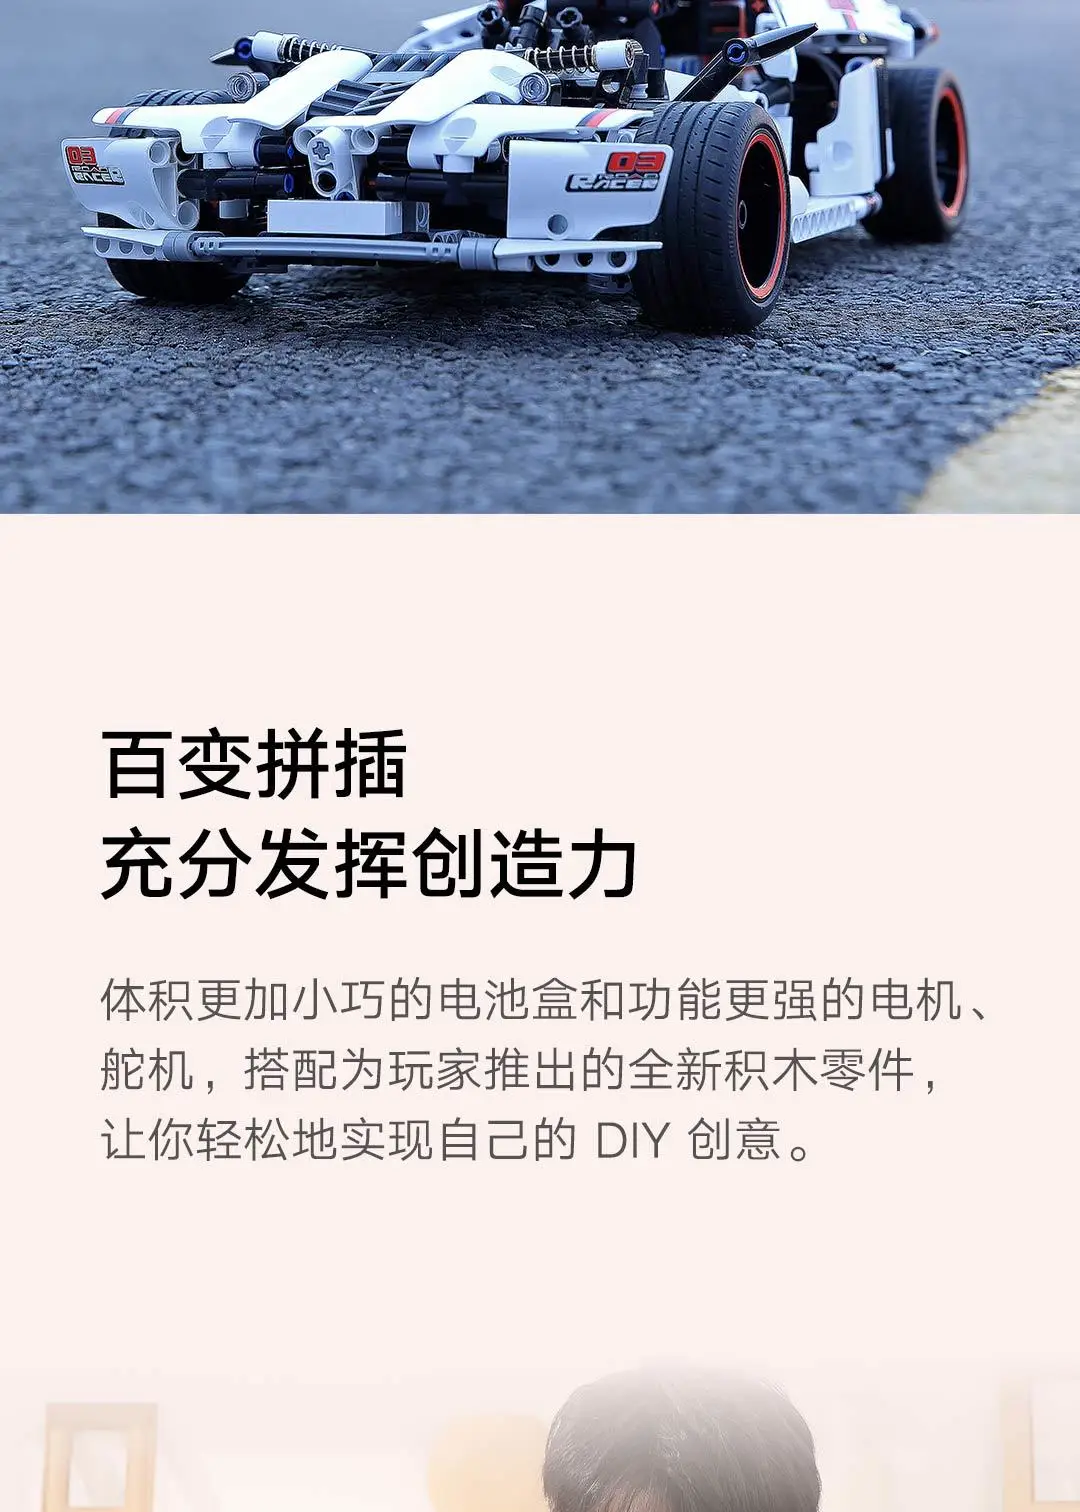 Xiaomi Smart Toy автомобиль строительный блок шоссе гонки 3D Трехмерные рисунки Автомобиль Моделирование Xiomi Смарт шоссе гоночный для детей